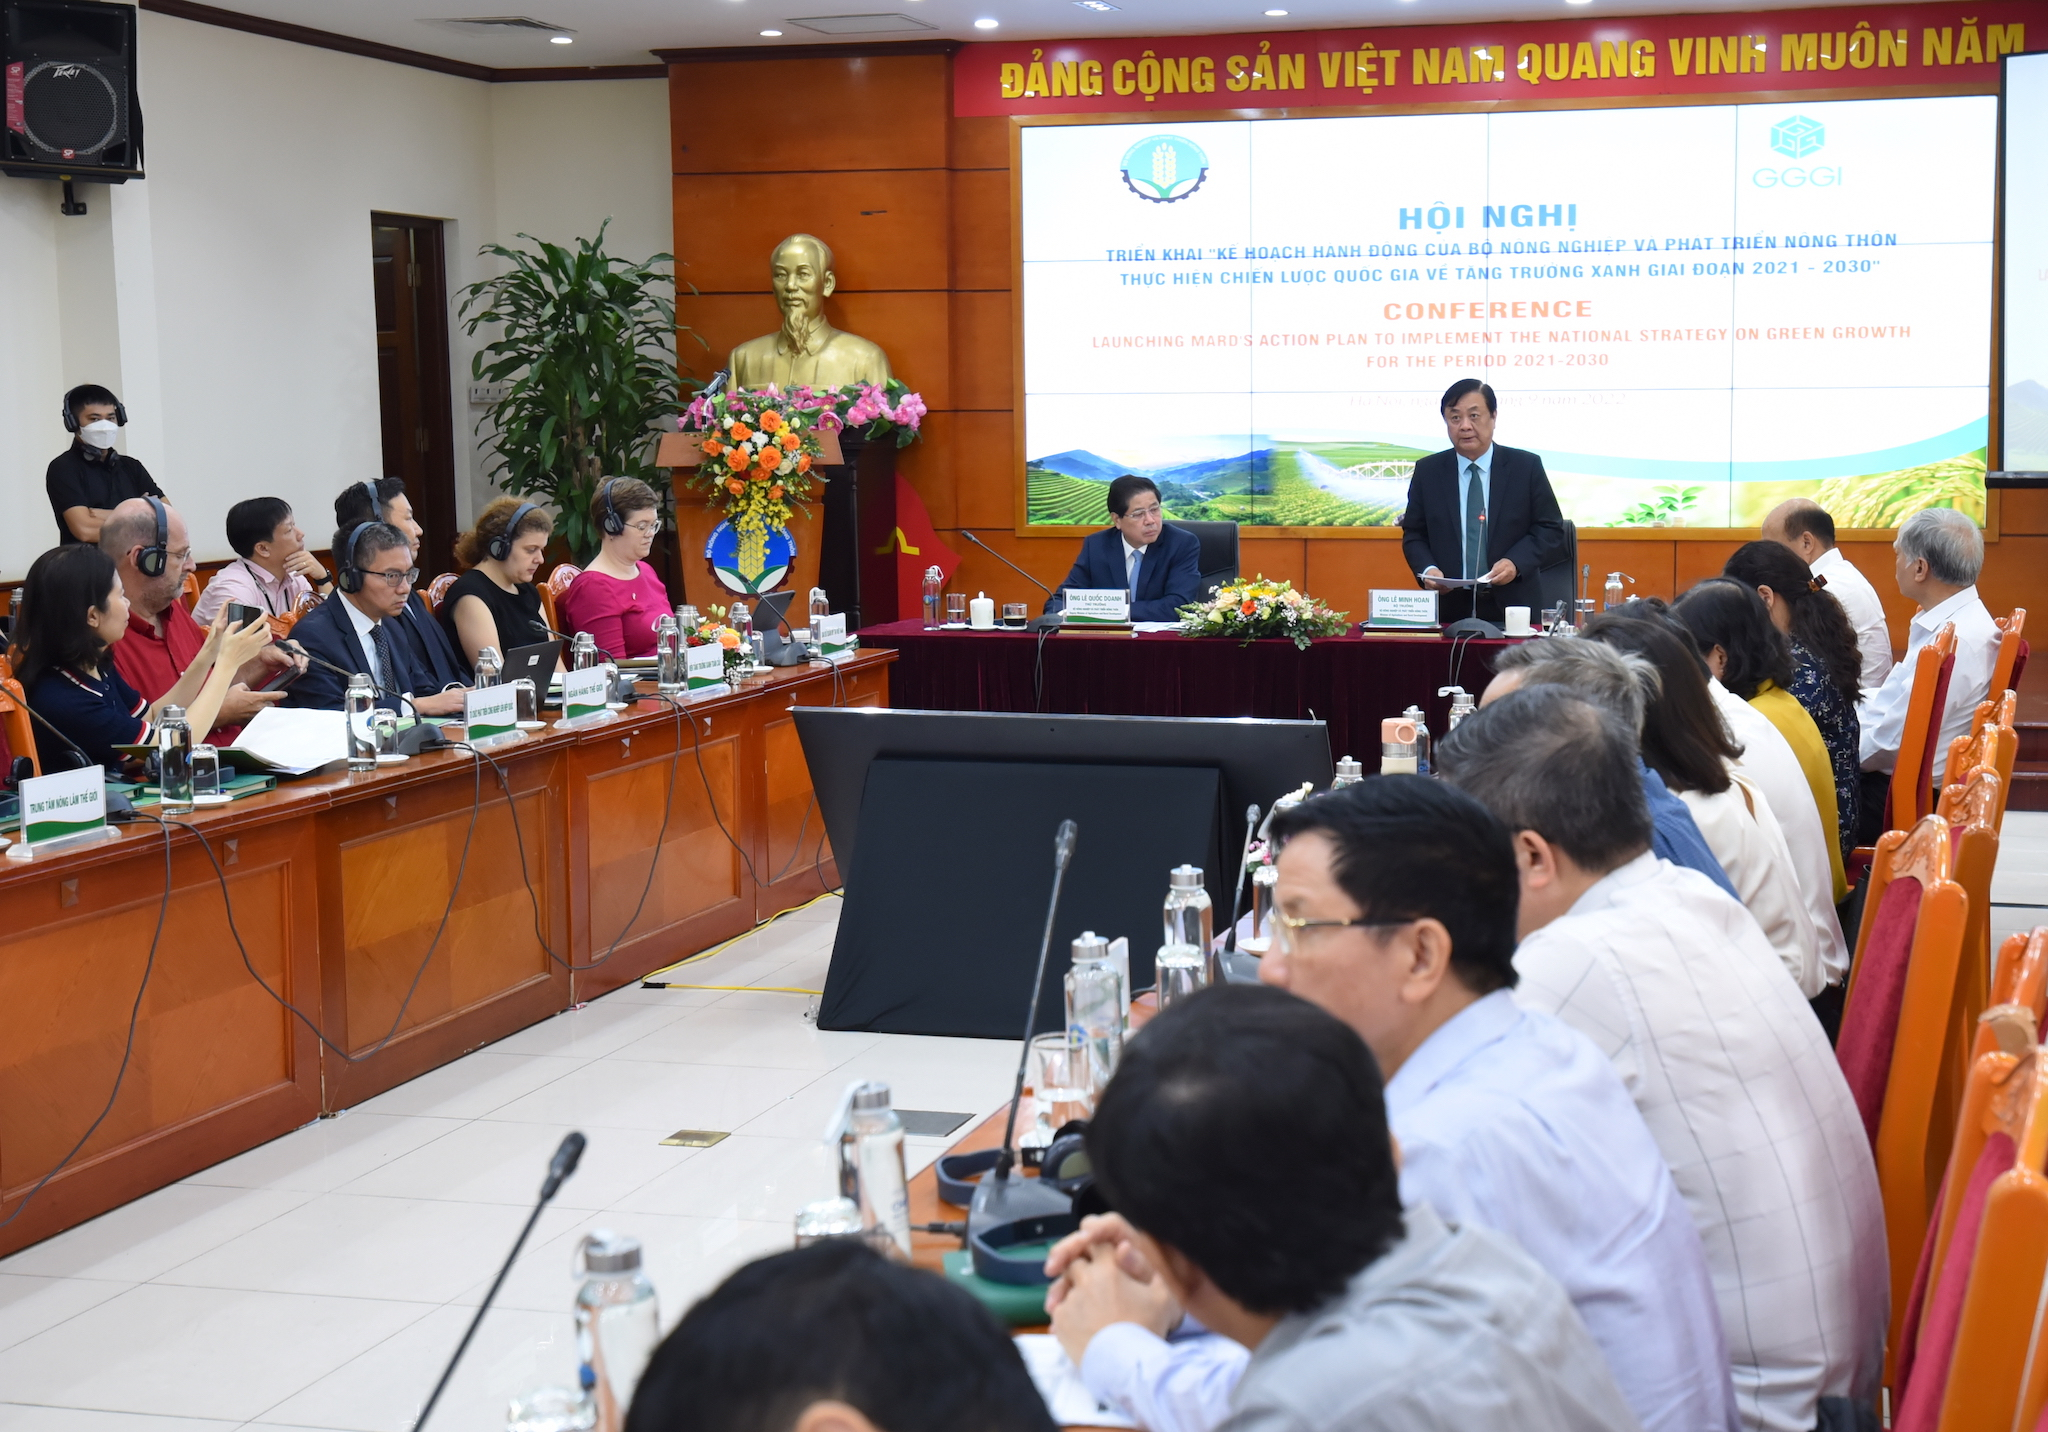 Bộ trưởng Lê Minh Hoan và Thứ trưởng Lê Quốc Doanh chủ trì Hội nghị triển khai Kế hoạch hành động của Bộ NN-PTNT thực hiện Chiến lược Quốc gia về tăng trưởng xanh giai đoạn 2021 - 2030 sáng 30/9. Ảnh: Tùng Đinh.